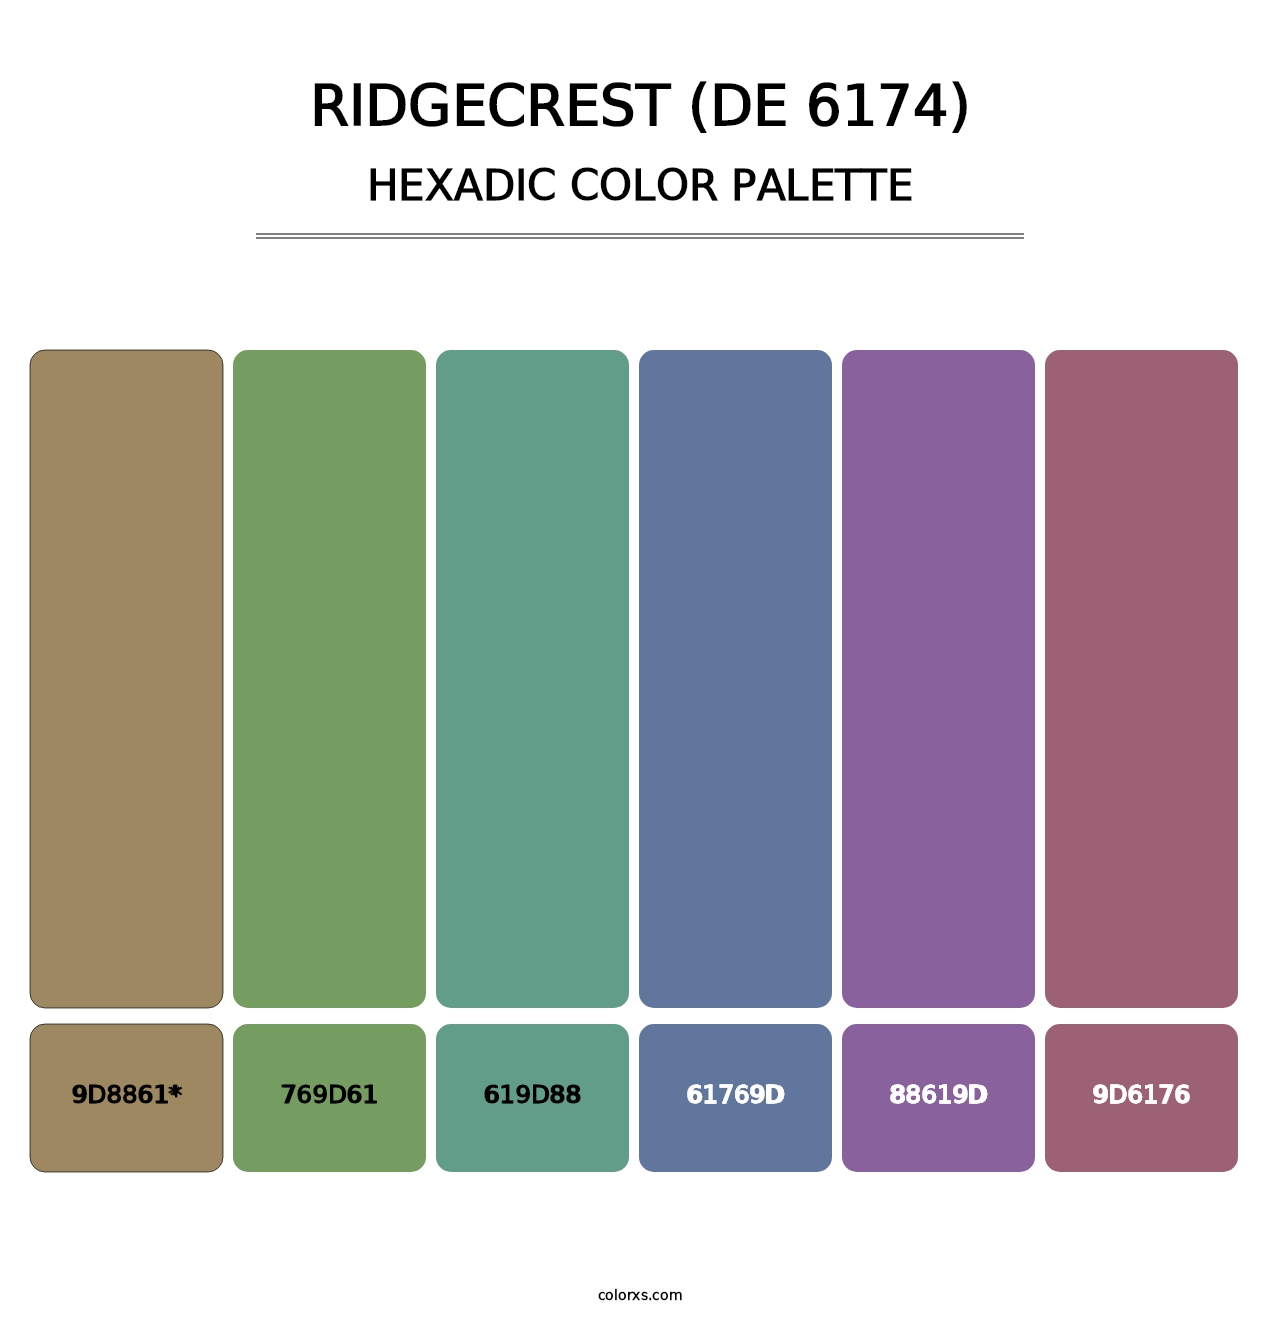 Ridgecrest (DE 6174) - Hexadic Color Palette